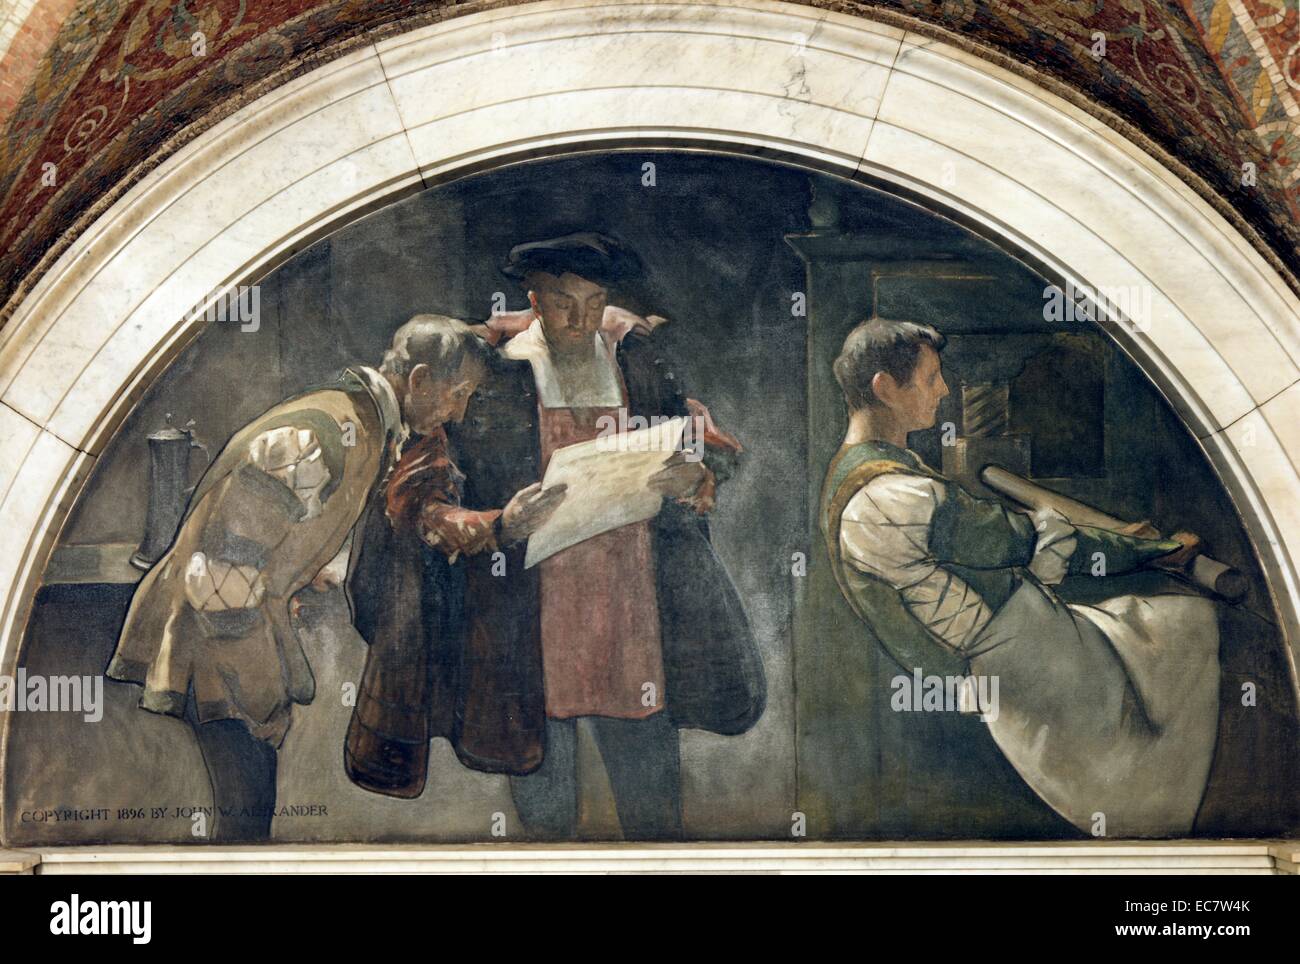 Teil fünf von sechs - Teil Wandbild. Es zeigt einen Mann in einer Druckmaschine und Gutenberg und einem anderen Mann Nachweis der Prüfung arbeiten. Zwischen 1890 und 1900. Stockfoto